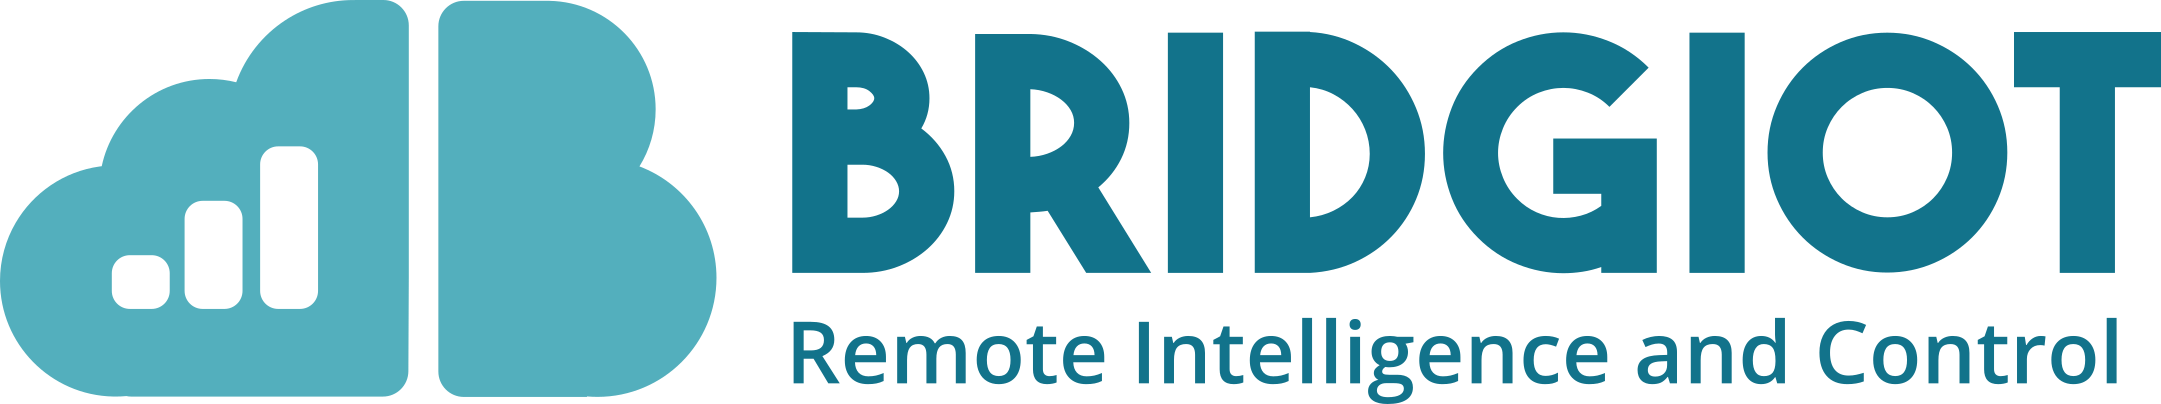 BridgIoT's logo.